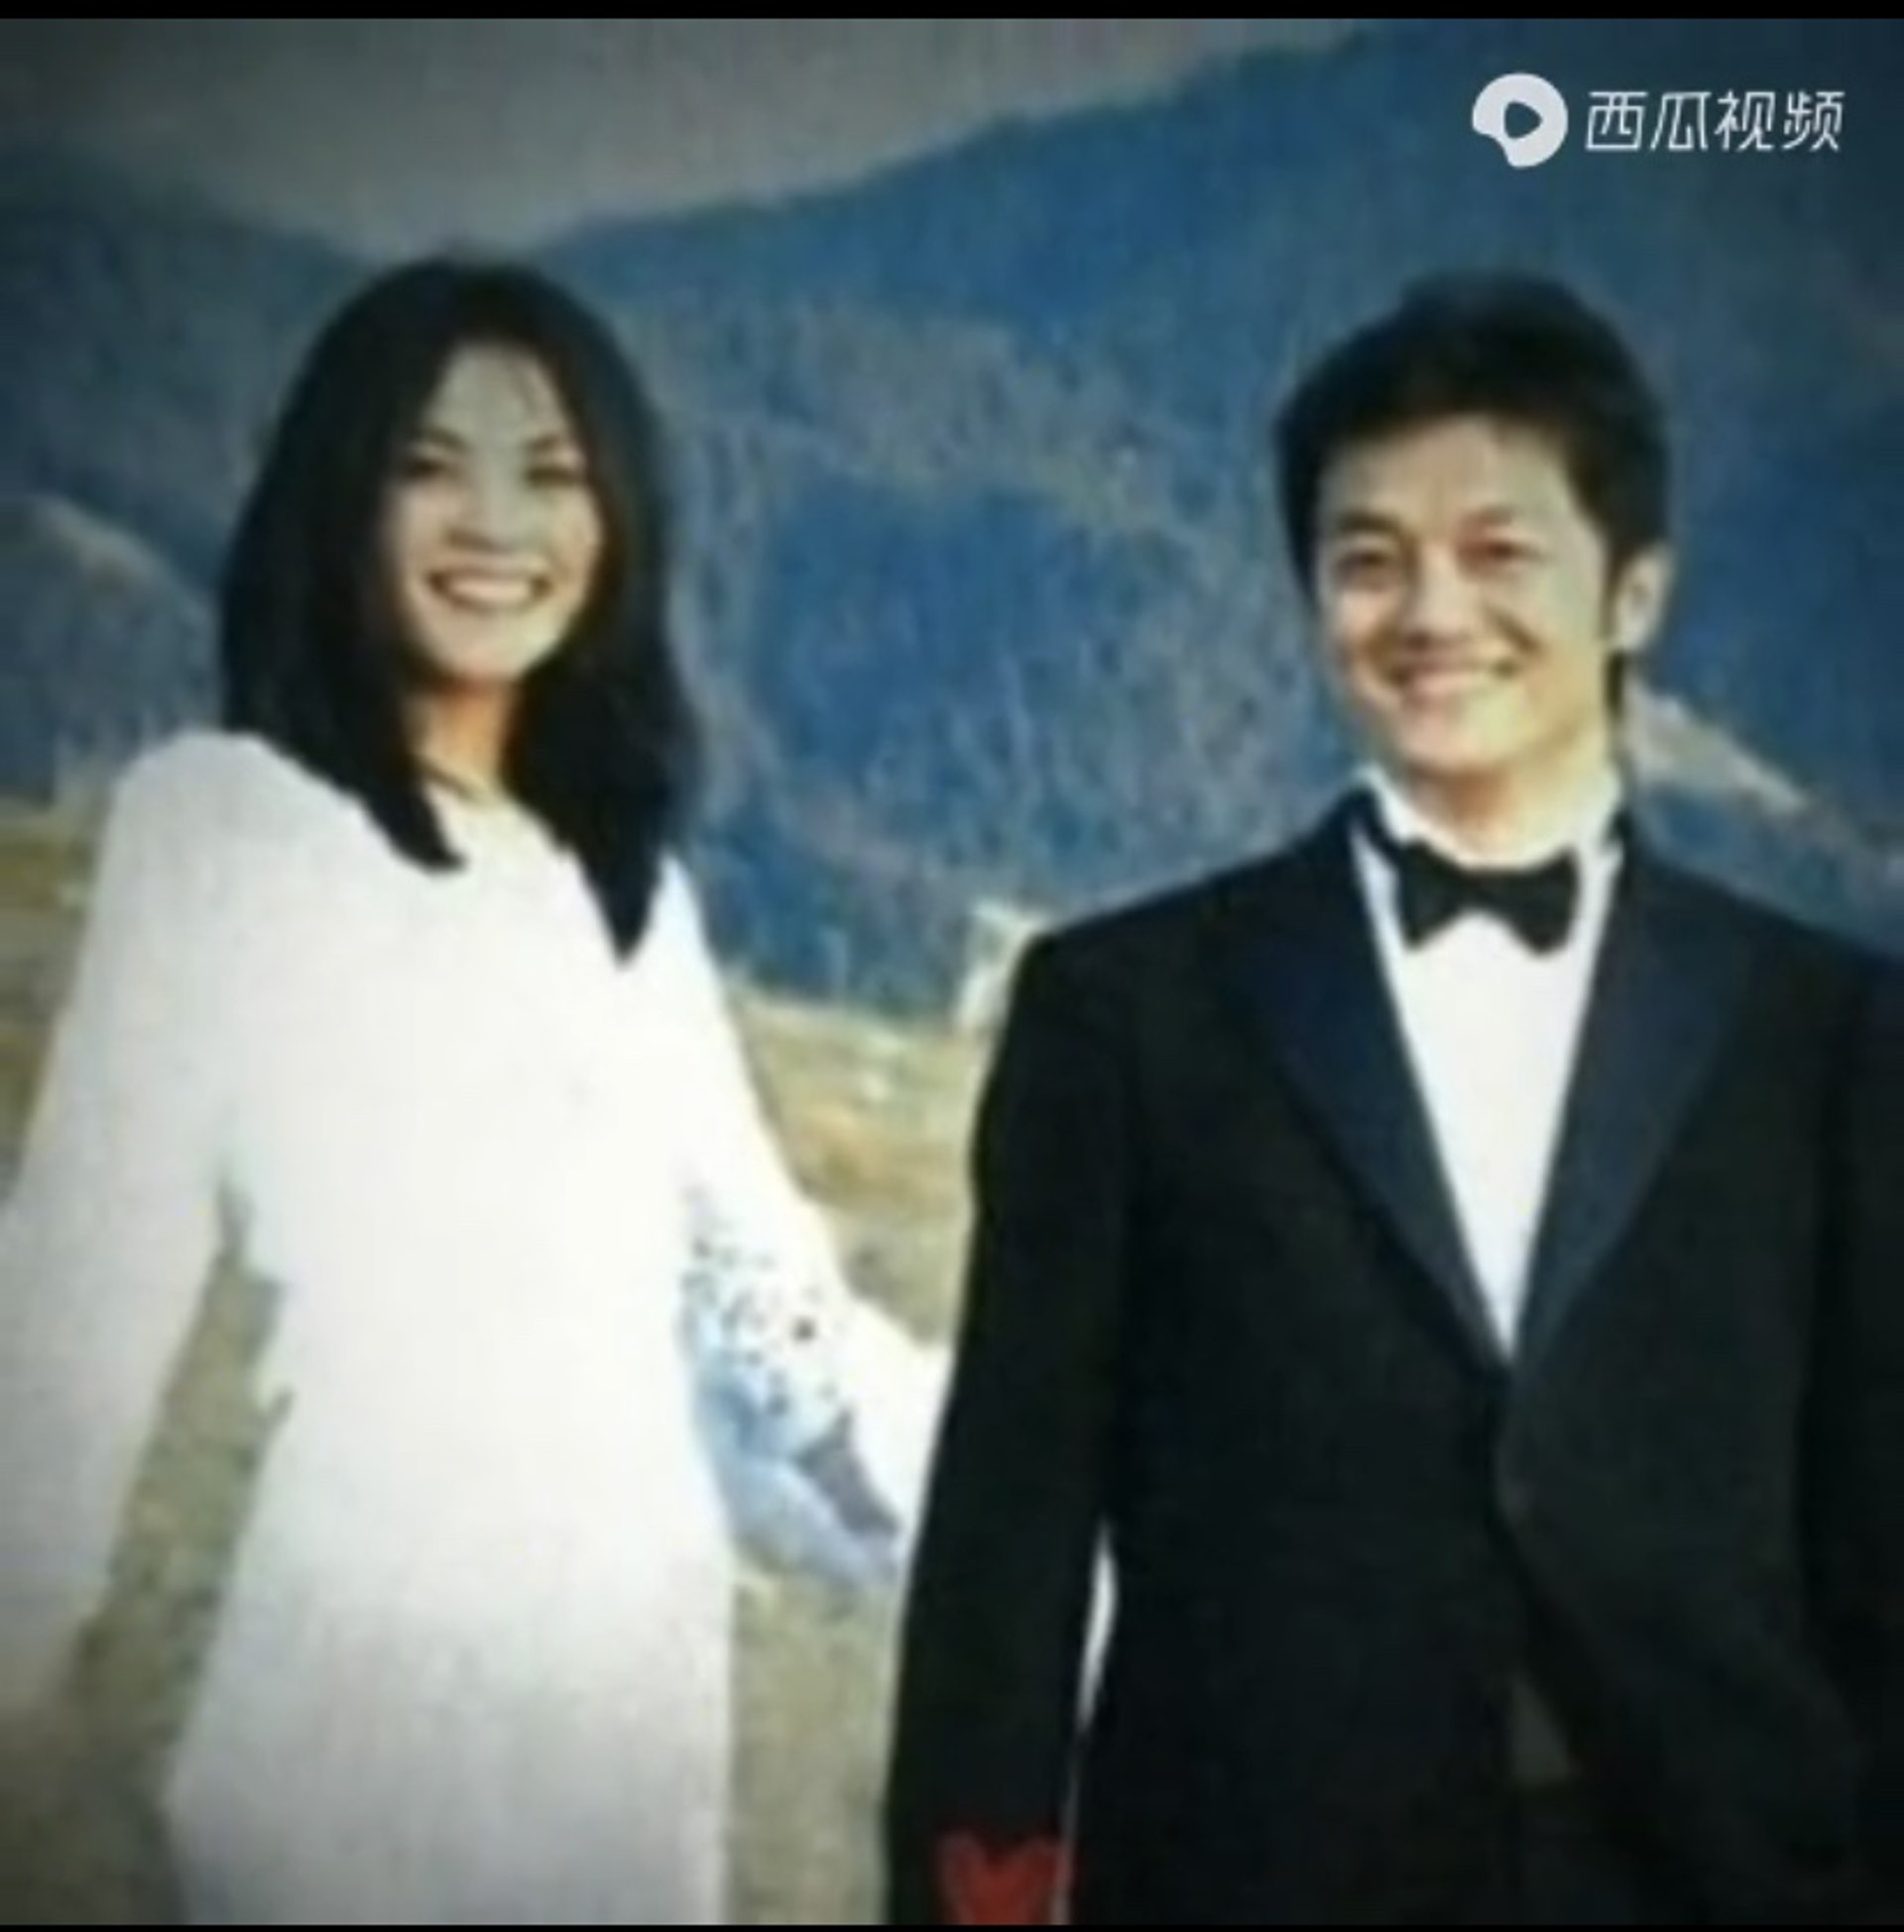 网上近日流出几张疑似王菲与李亚鹏于15年前拍摄的结婚照。